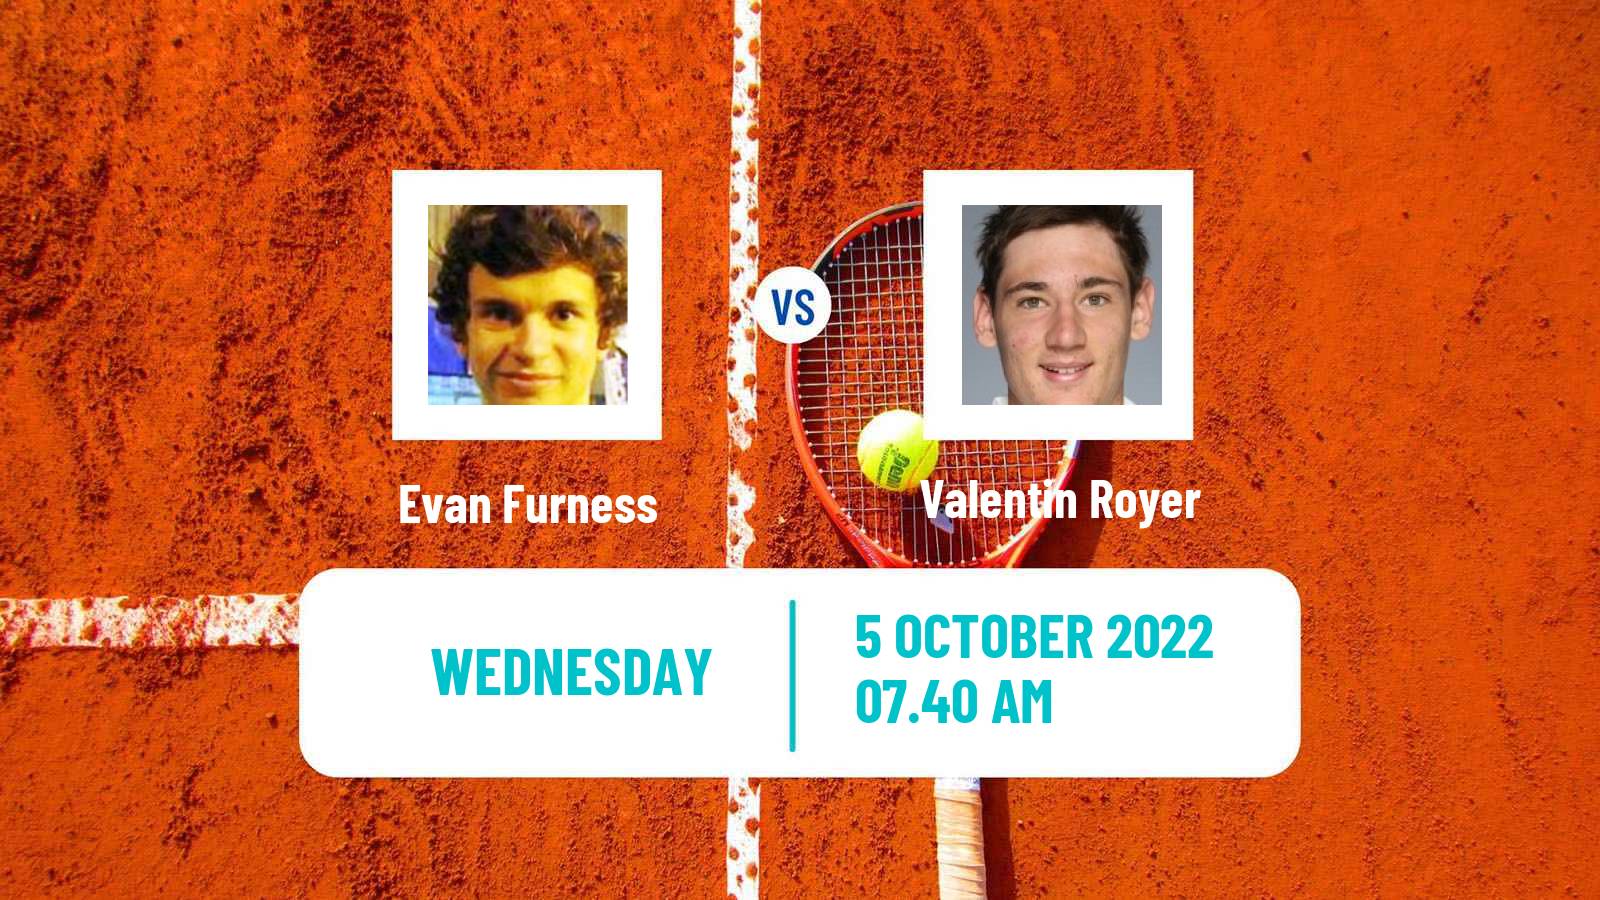 Tennis ATP Challenger Evan Furness - Valentin Royer